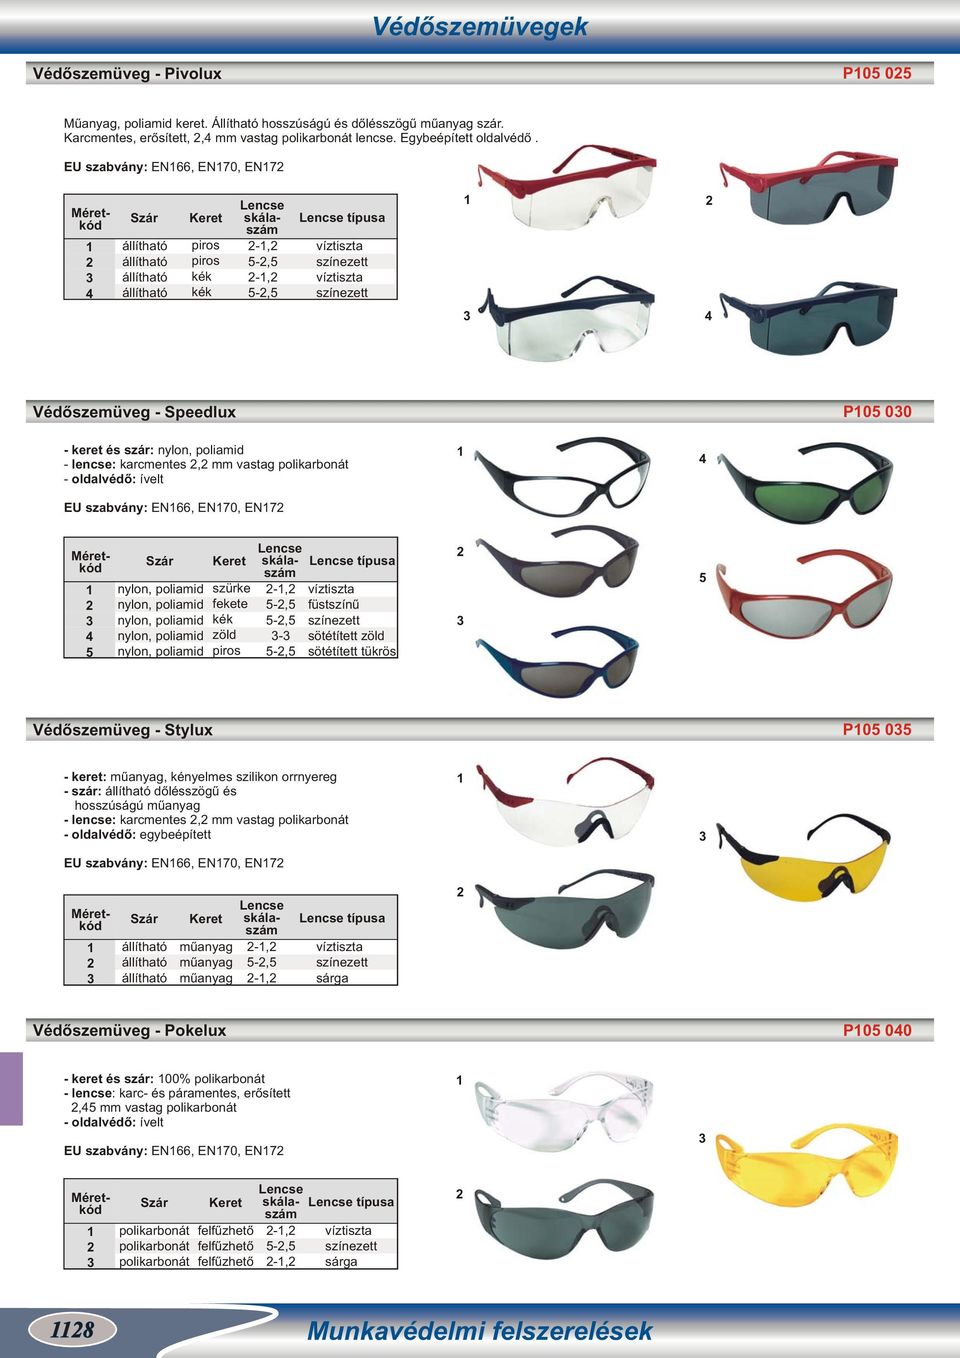 Védőszemüveg - Speedlux P5 00 - keret és szár: nylon, poliamid - lencse: karcmentes, mm vastag polikarbonát - oldalvédő: ívelt EU szabvány: EN66, EN0, EN 4 4 5 Szár nylon, poliamid nylon, poliamid